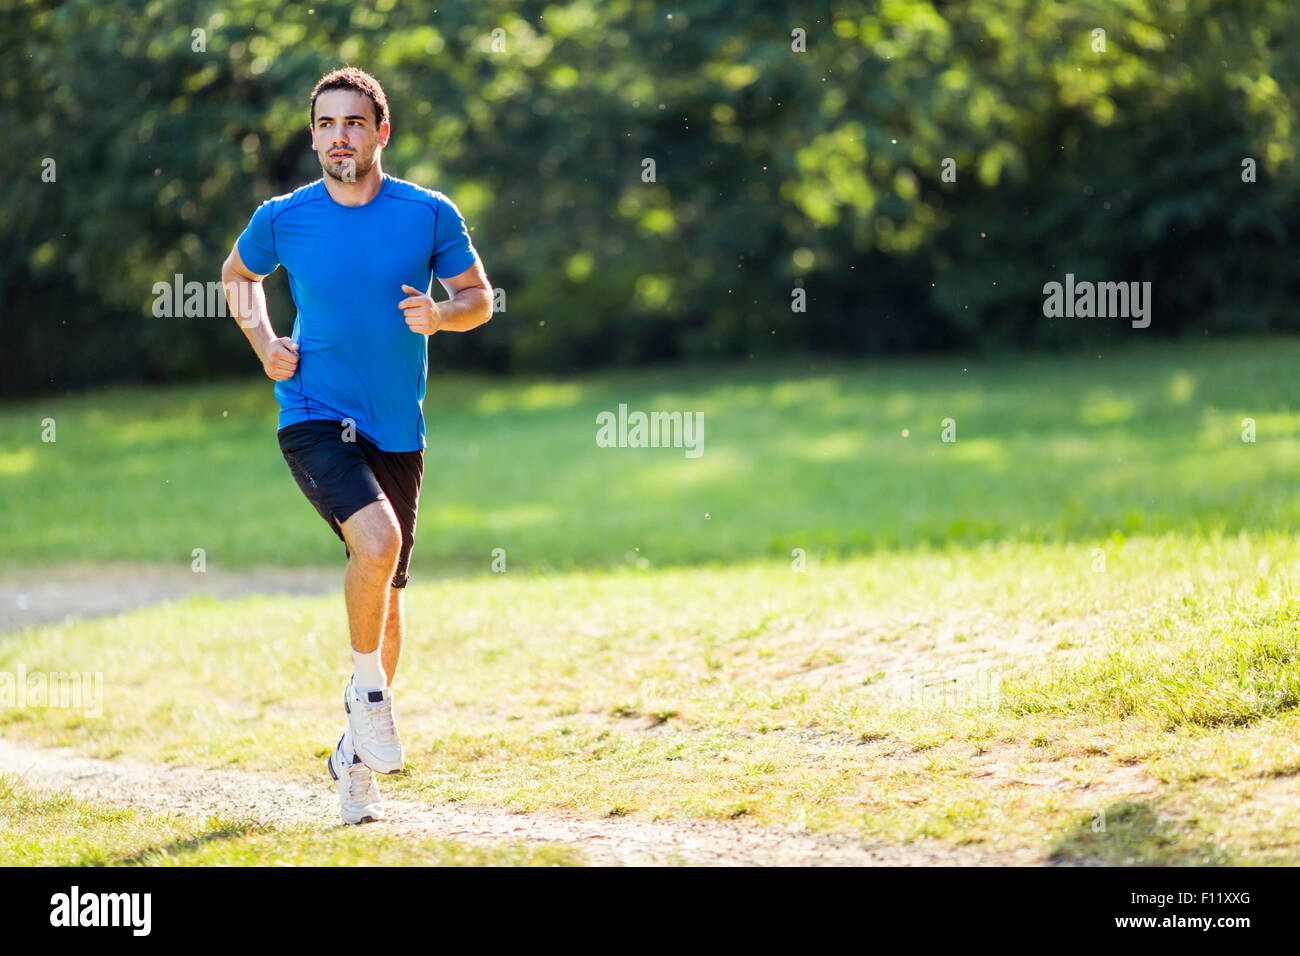 Colocar joven atleta correr al aire libre Foto de stock